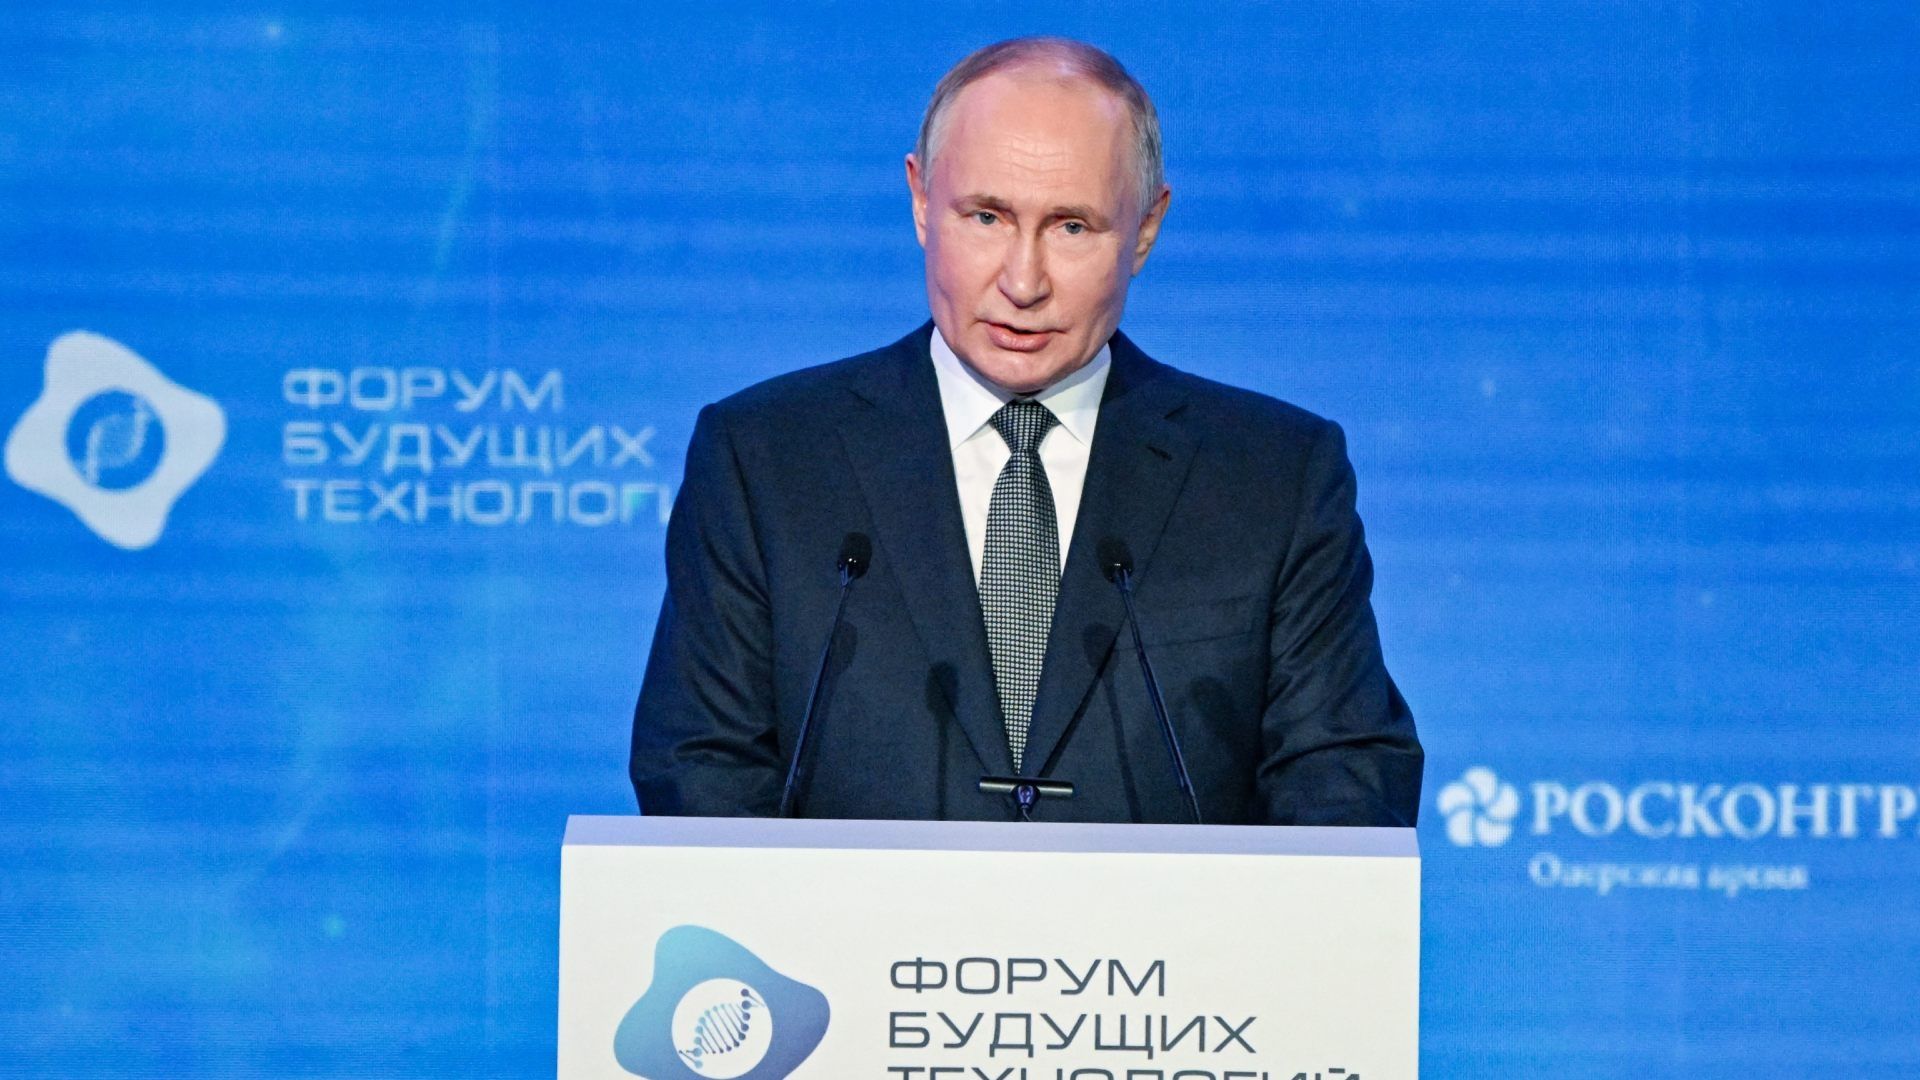 El presidente de Rusia, Vladimir Putin, durante foro sobre tecnologías del futuro